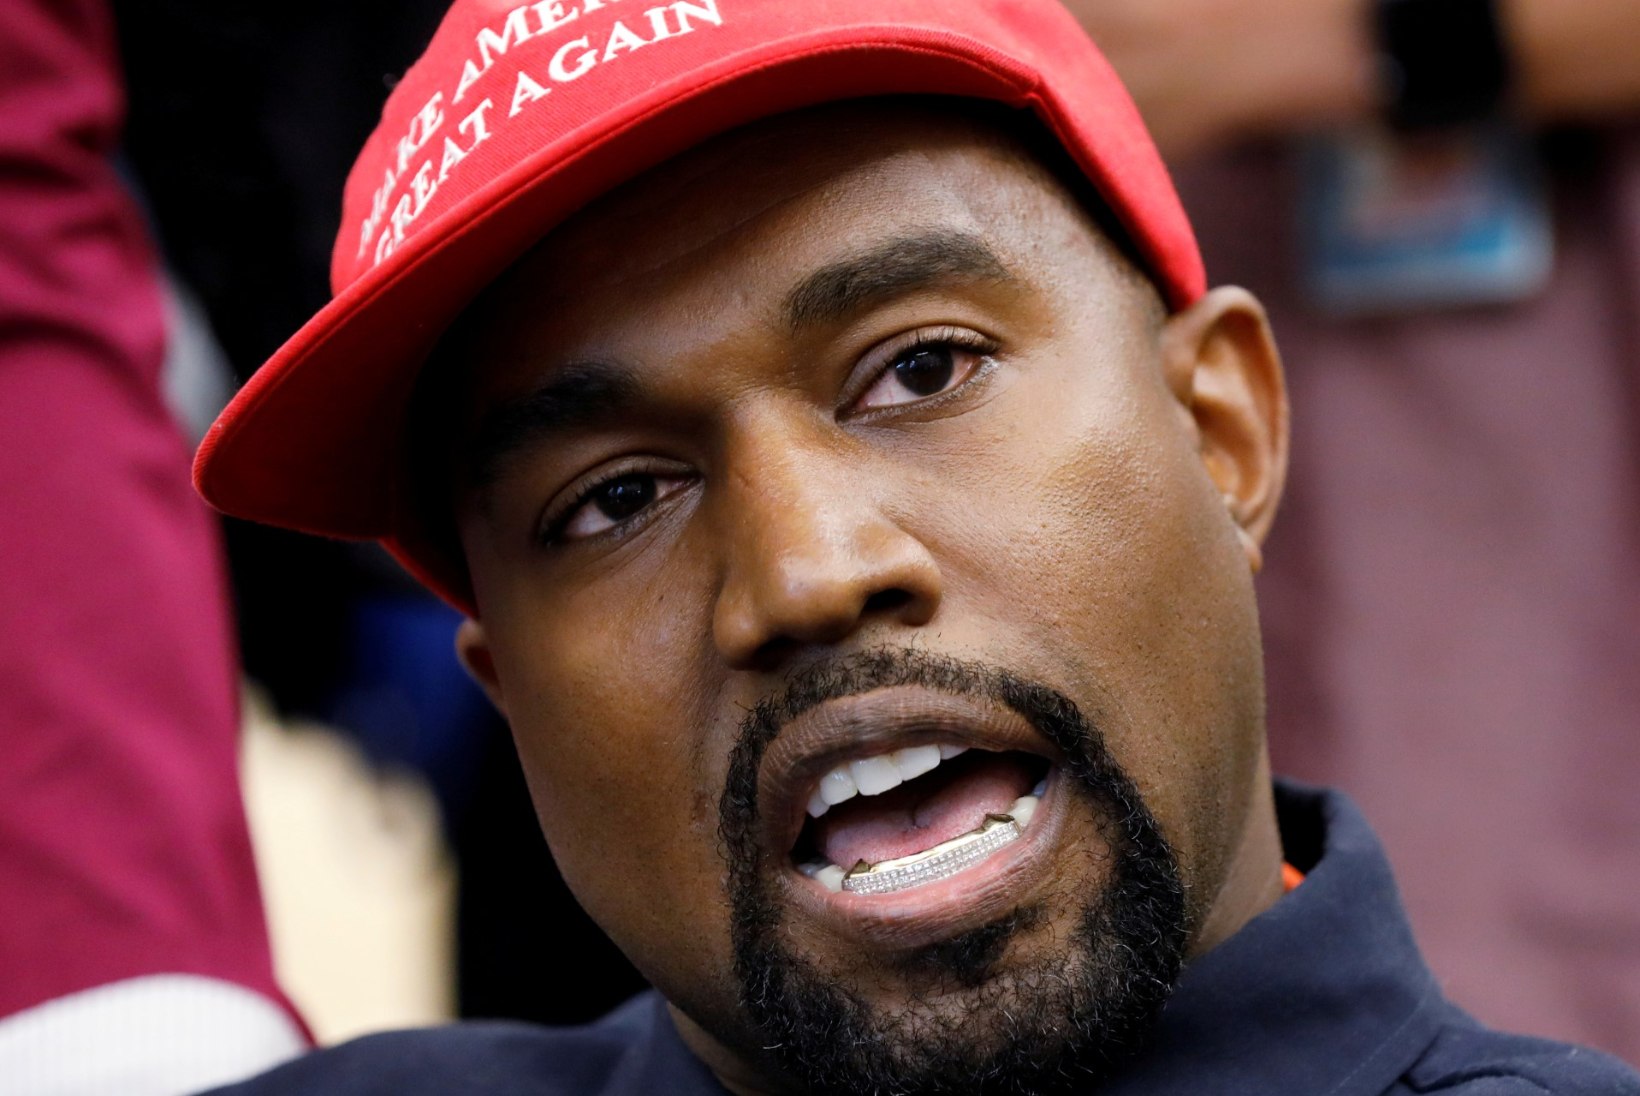 Kanye West sai USA presidendivalimistel vaid 60 000 häält